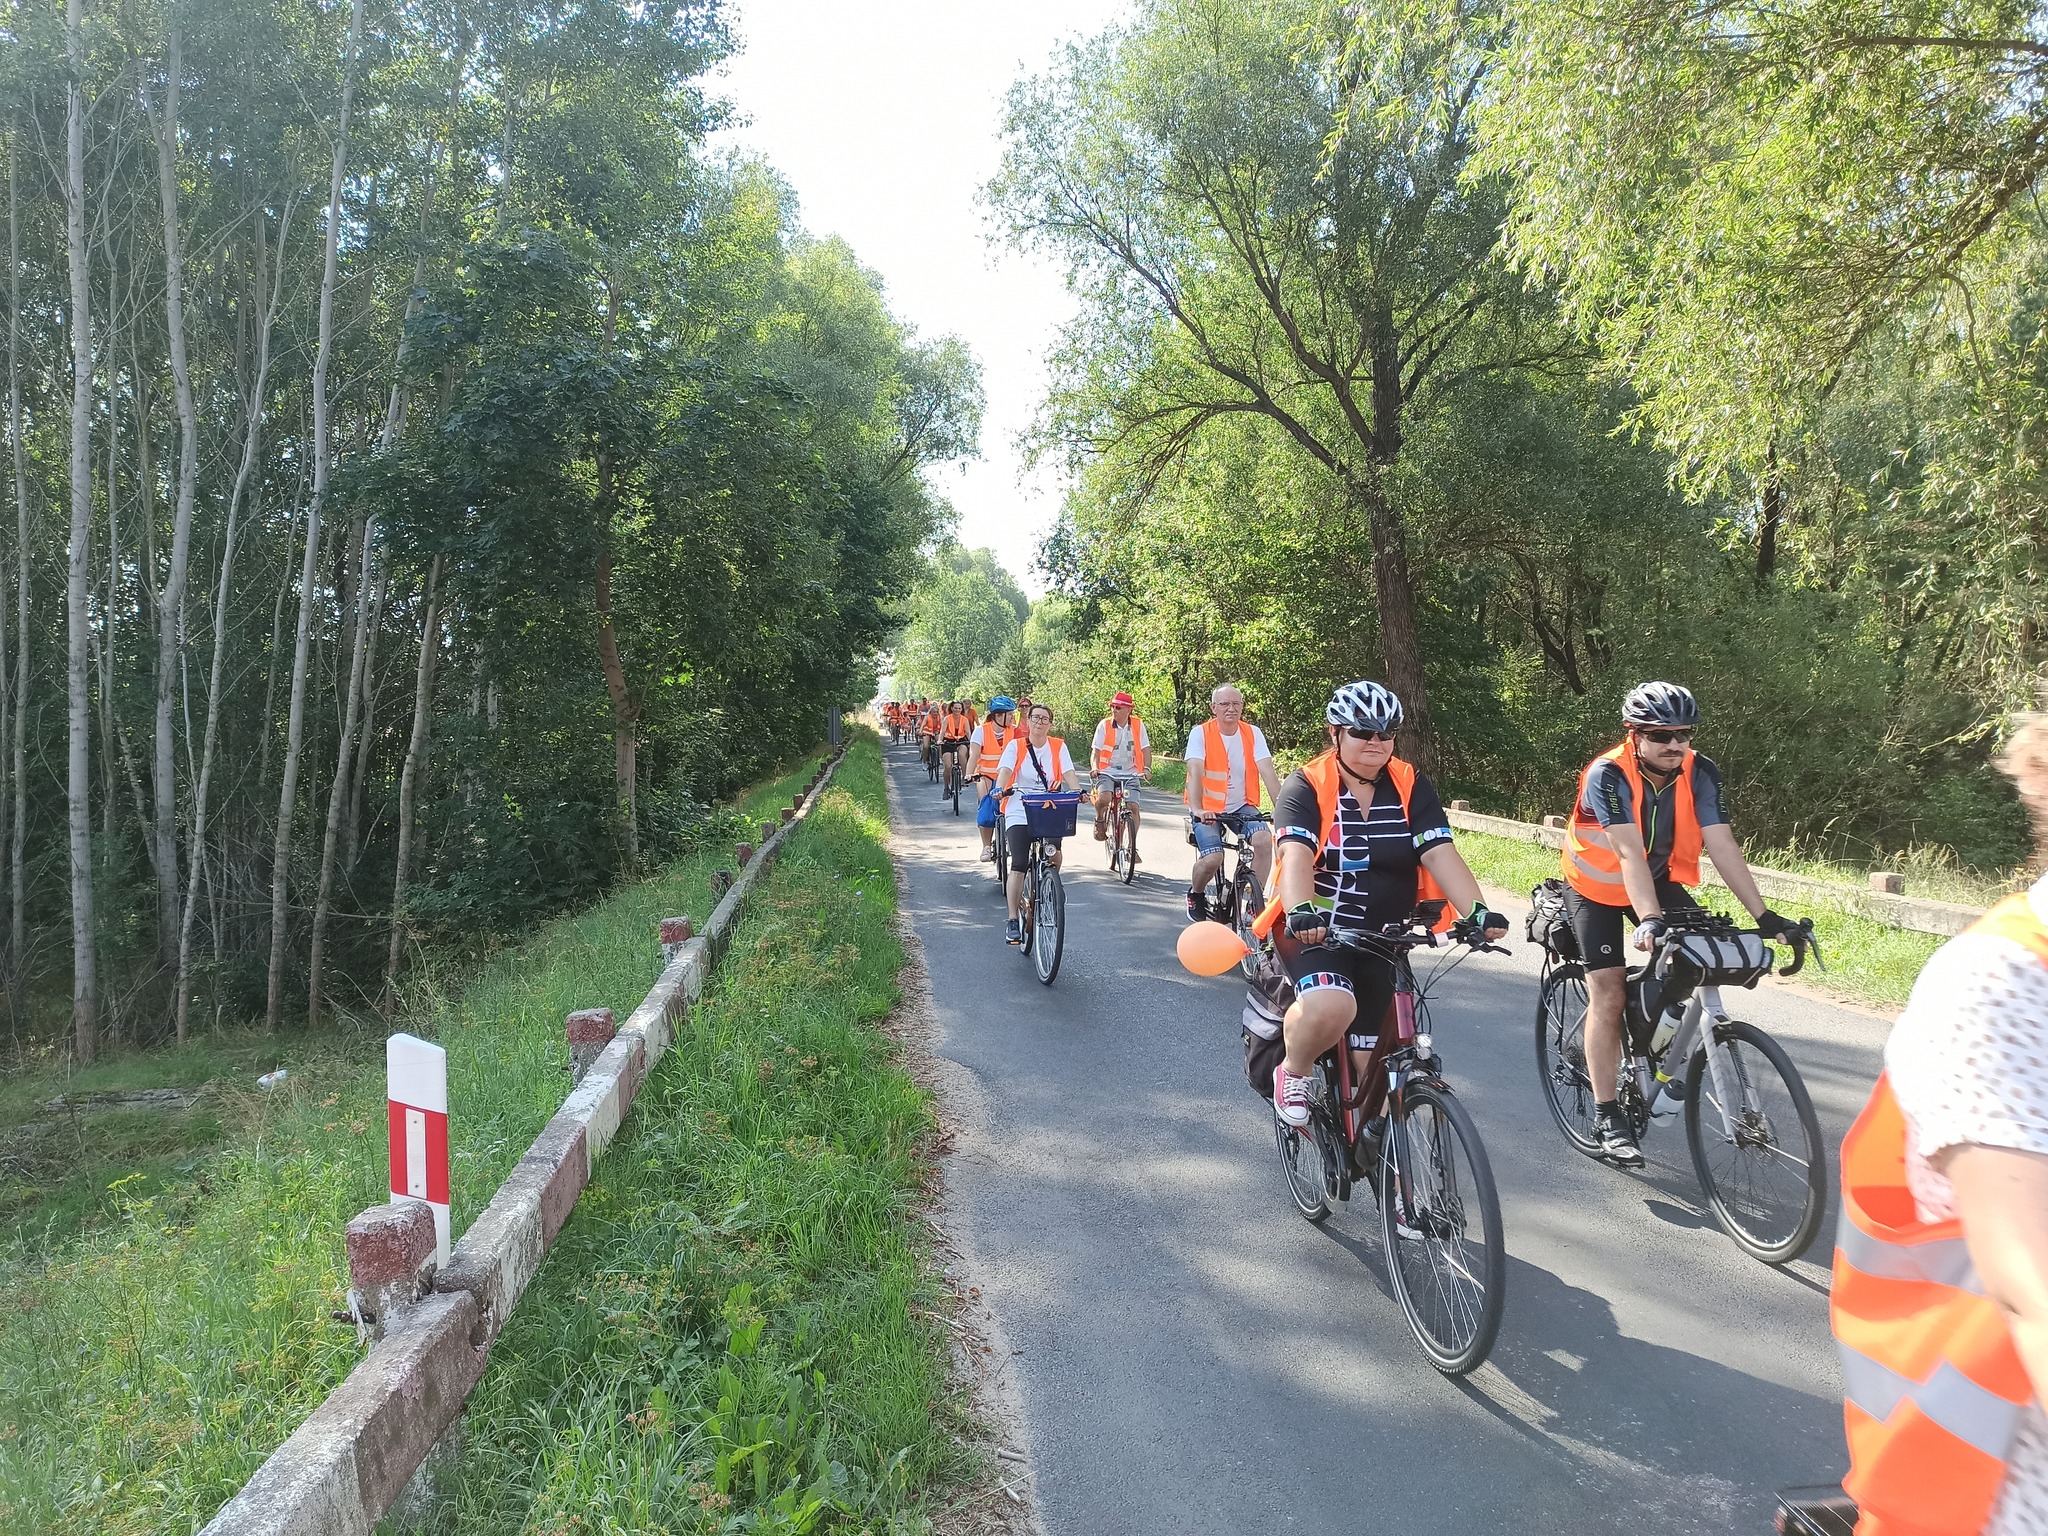 uczestnicy rajdu rowerowego jadą drogą publiczną (przez zalesione tereny), wszyscy mają założone pomarańczowe kamizelki odblaskowe z napisem Odjazdowy Bibliotekarz